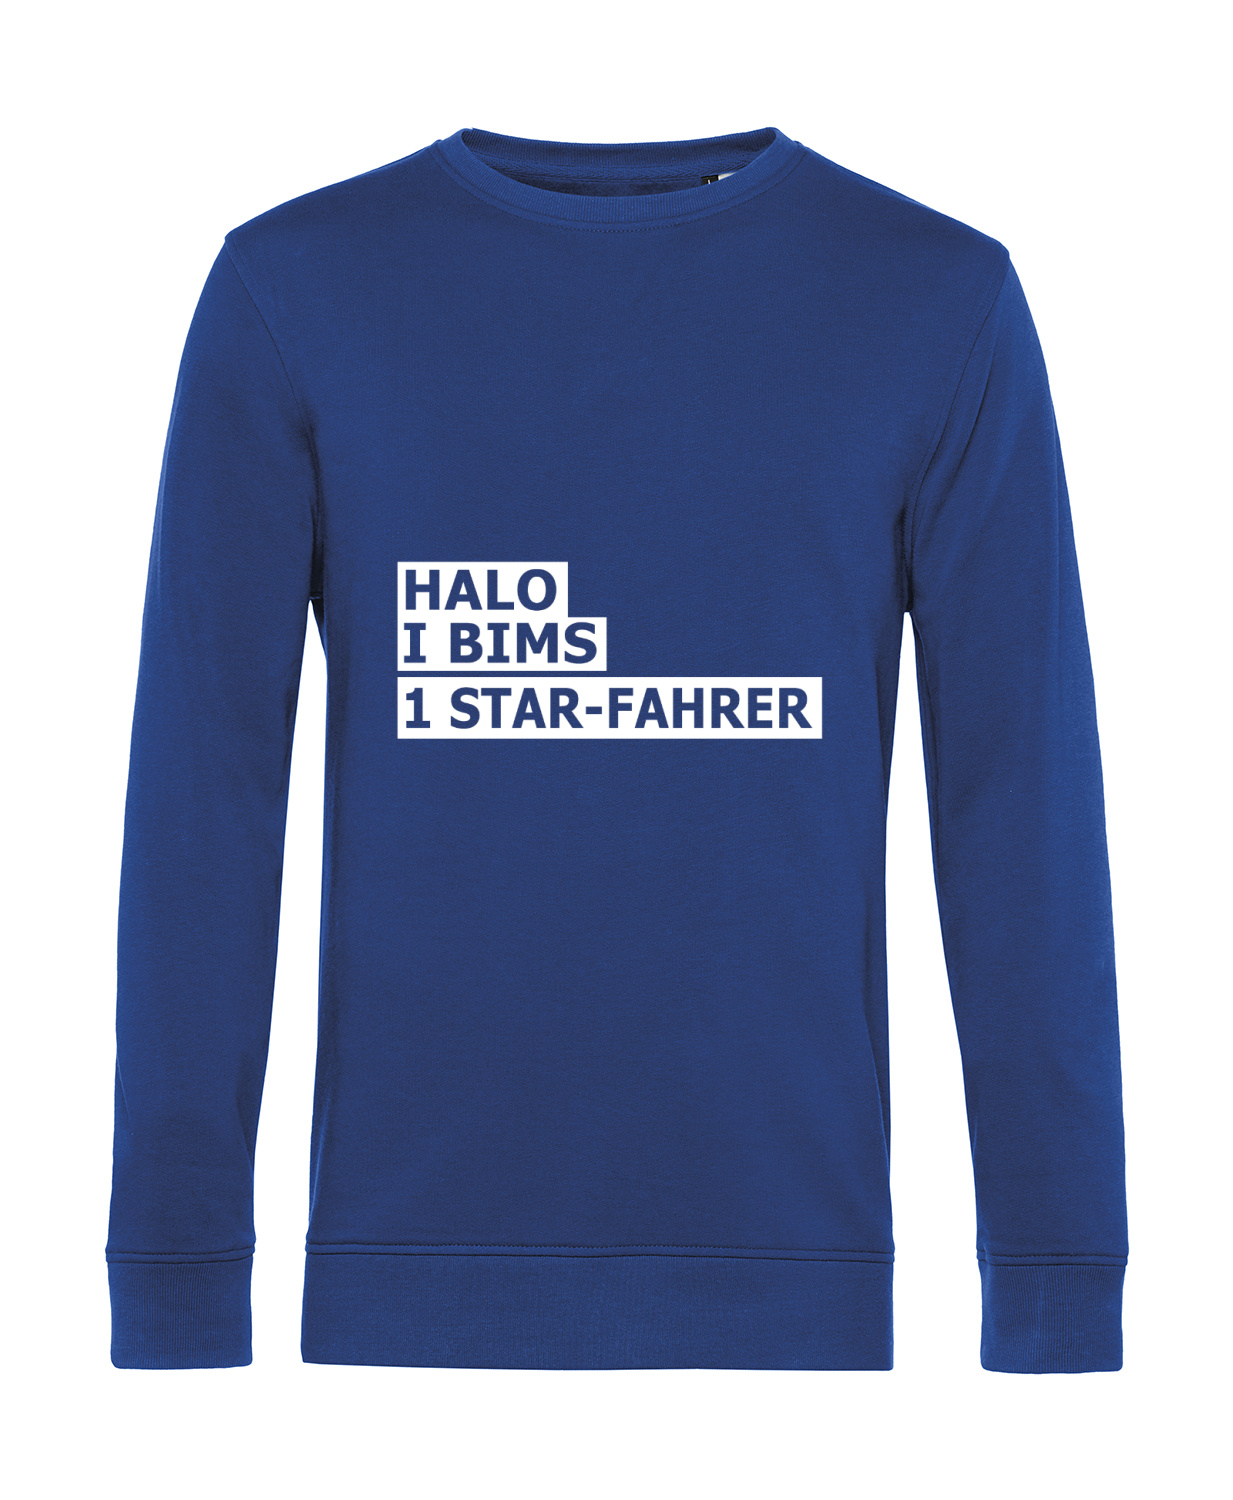 Nachhaltiges Sweatshirt Herren 2Takter - Halo I bims 1 Star-Fahrer